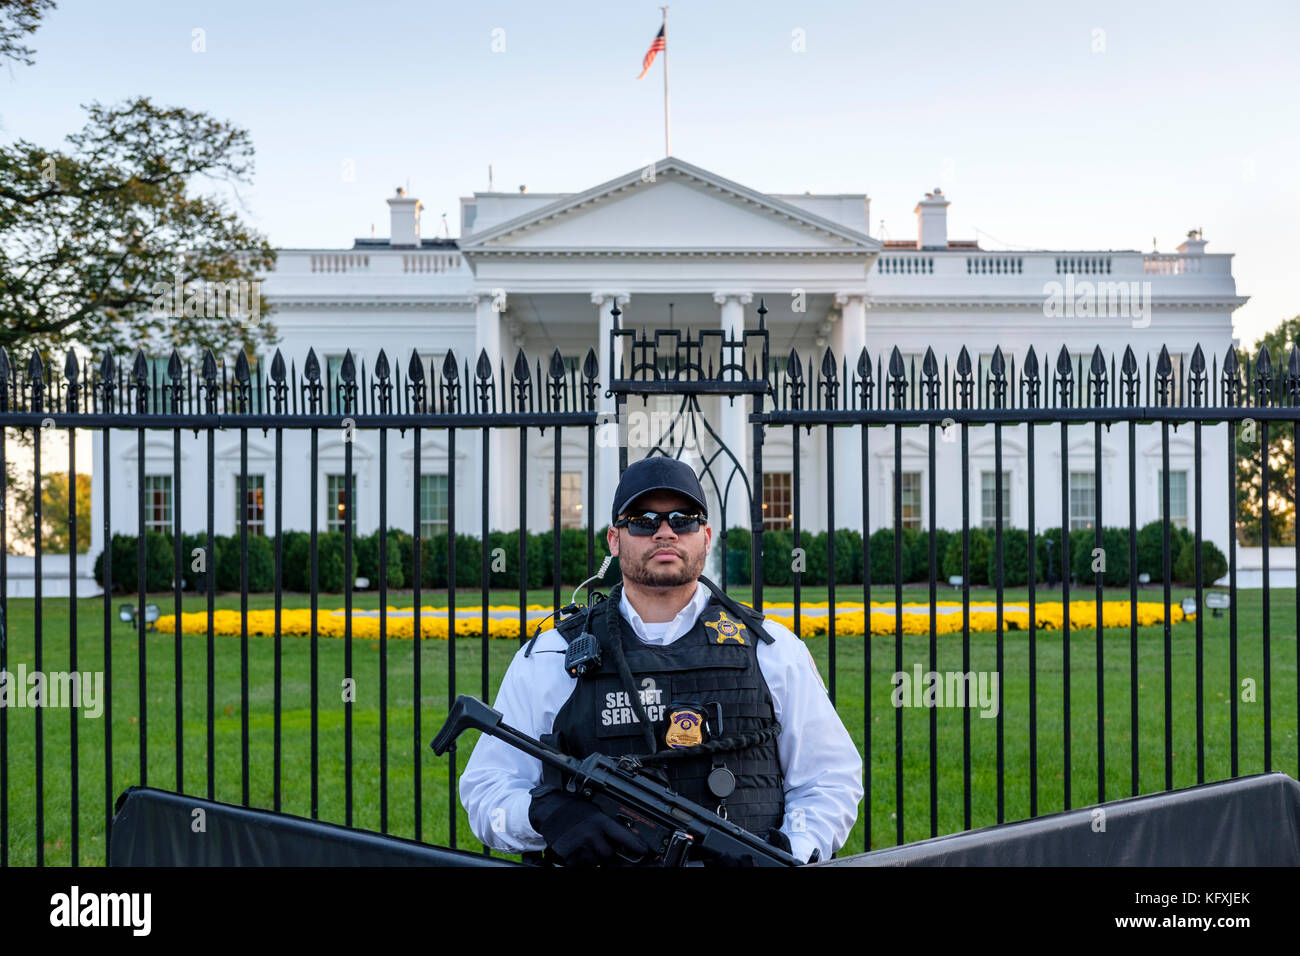 Agente del Servicio Secreto estadounidense armado con una Heckler & Koch MP5 metralleta de pie detrás de una barricada delante de la Casa Blanca en Washington, D.C. Foto de stock